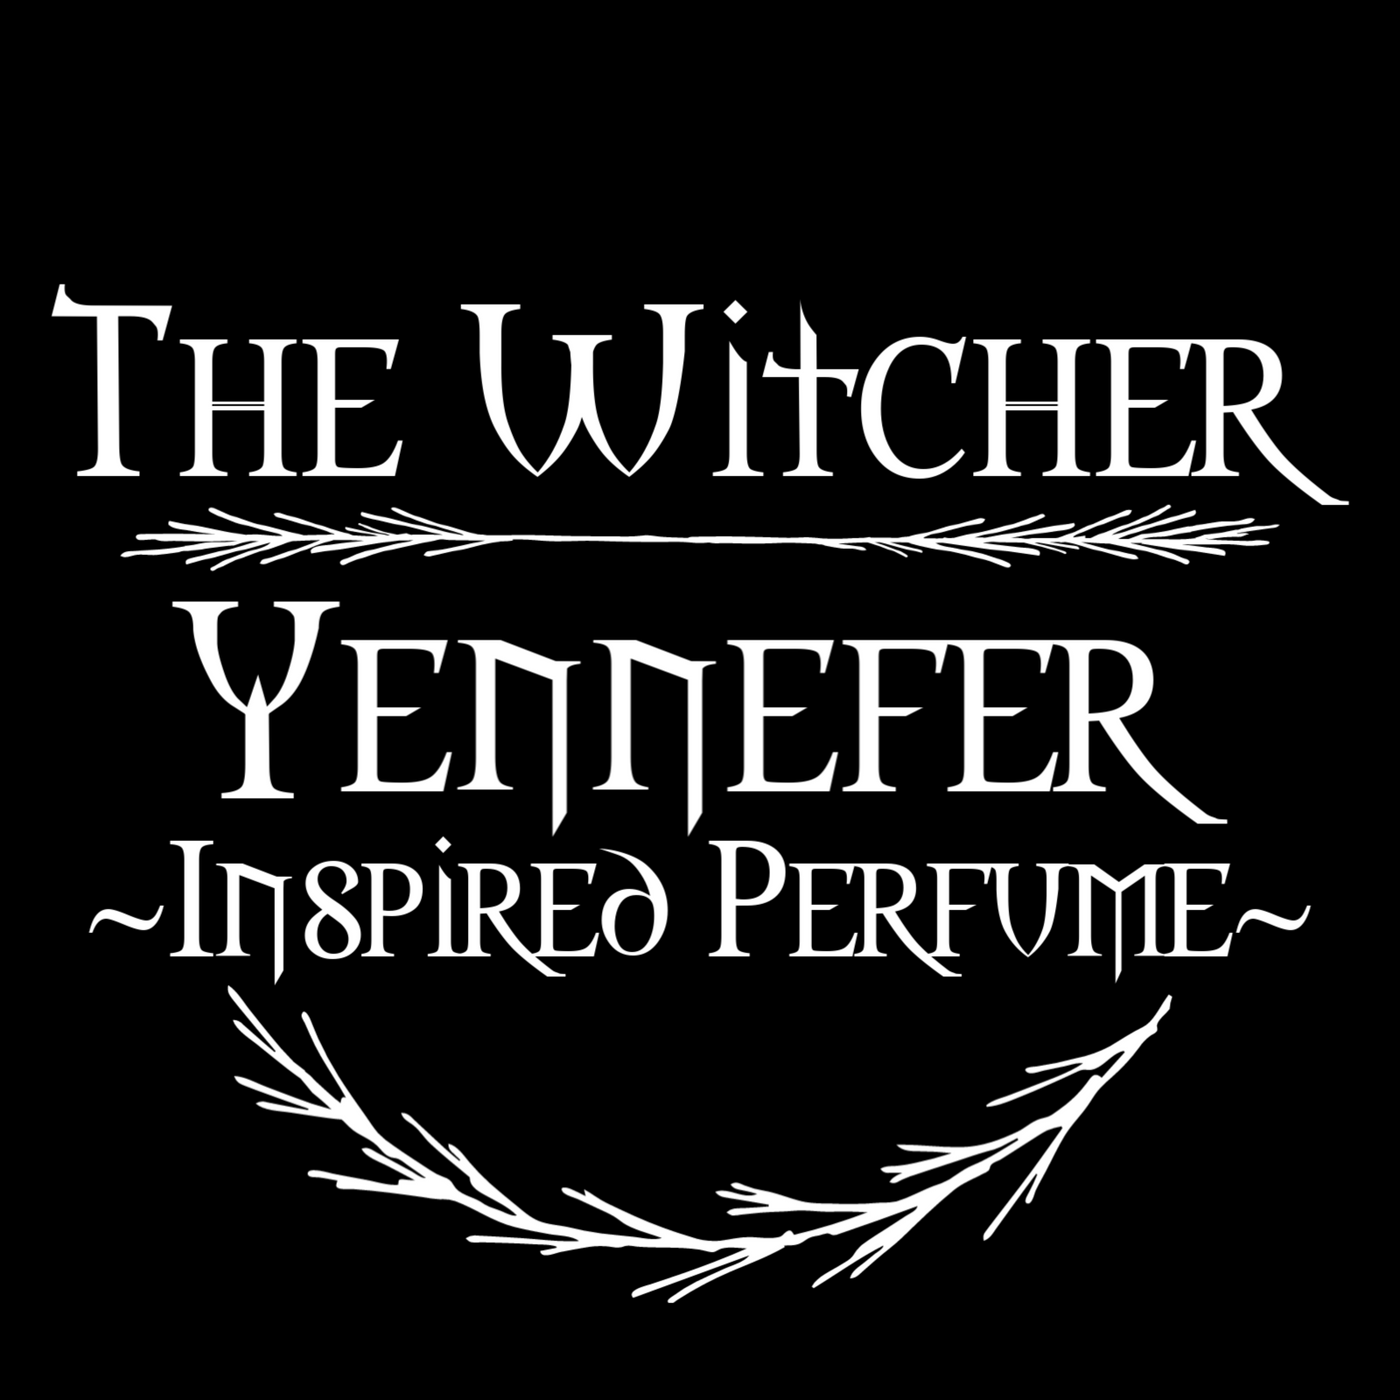 Yennefer of Vengerberg inspired perfume (Bold or Soft, Lilac & Gooseberries)